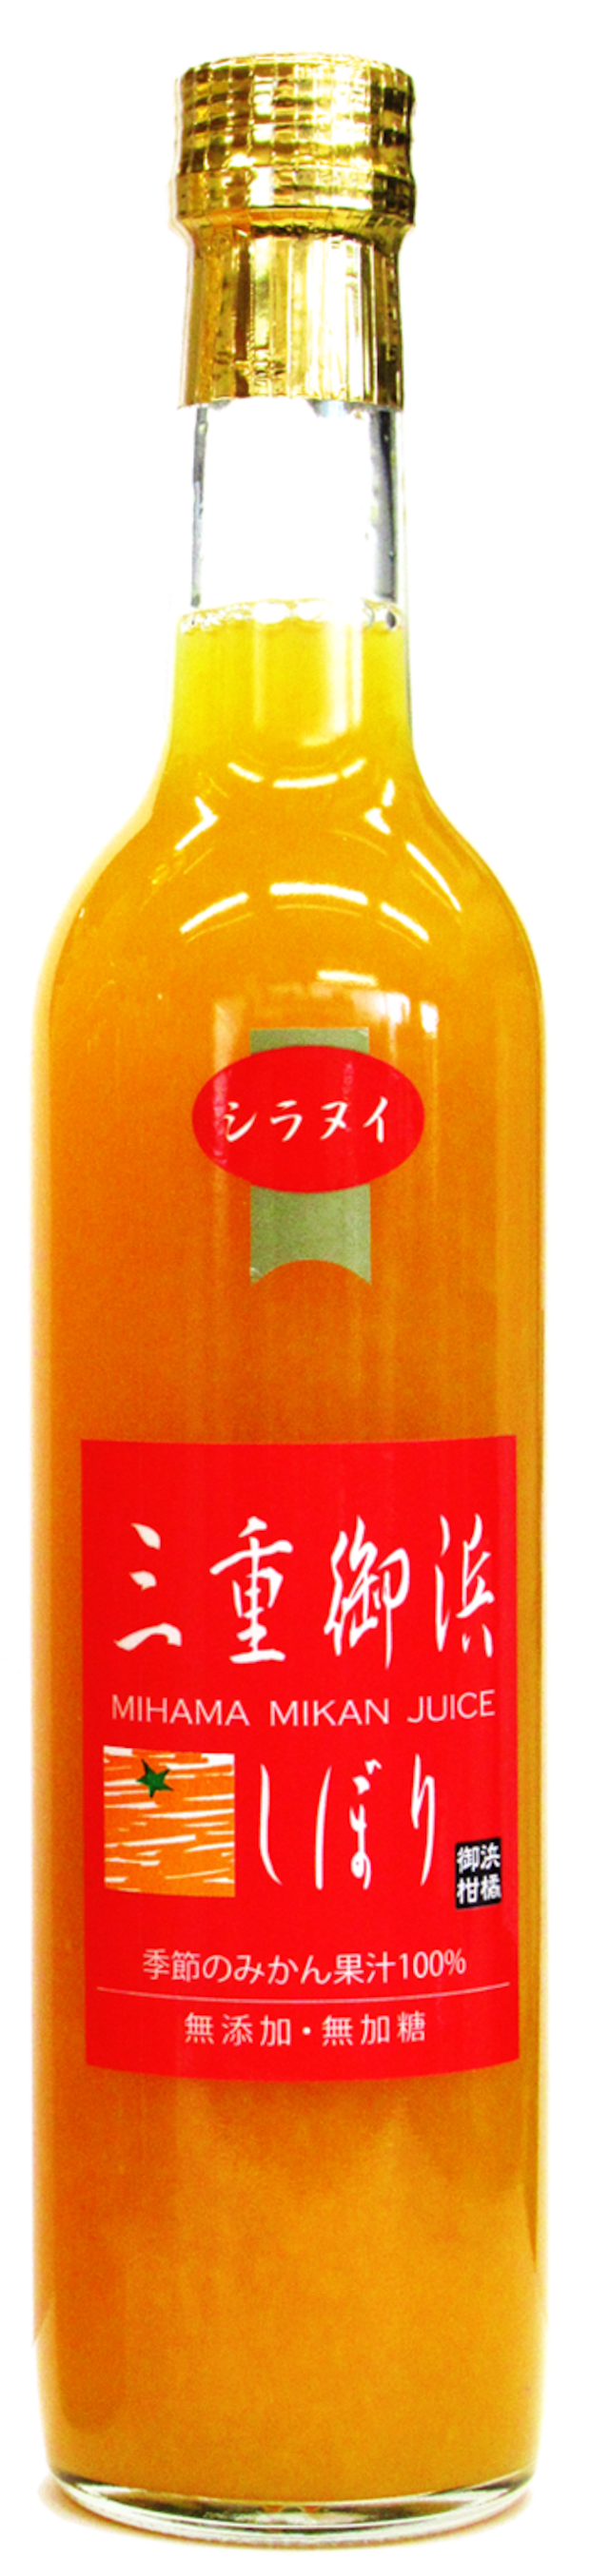 【御浜柑橘】シラヌイジュース